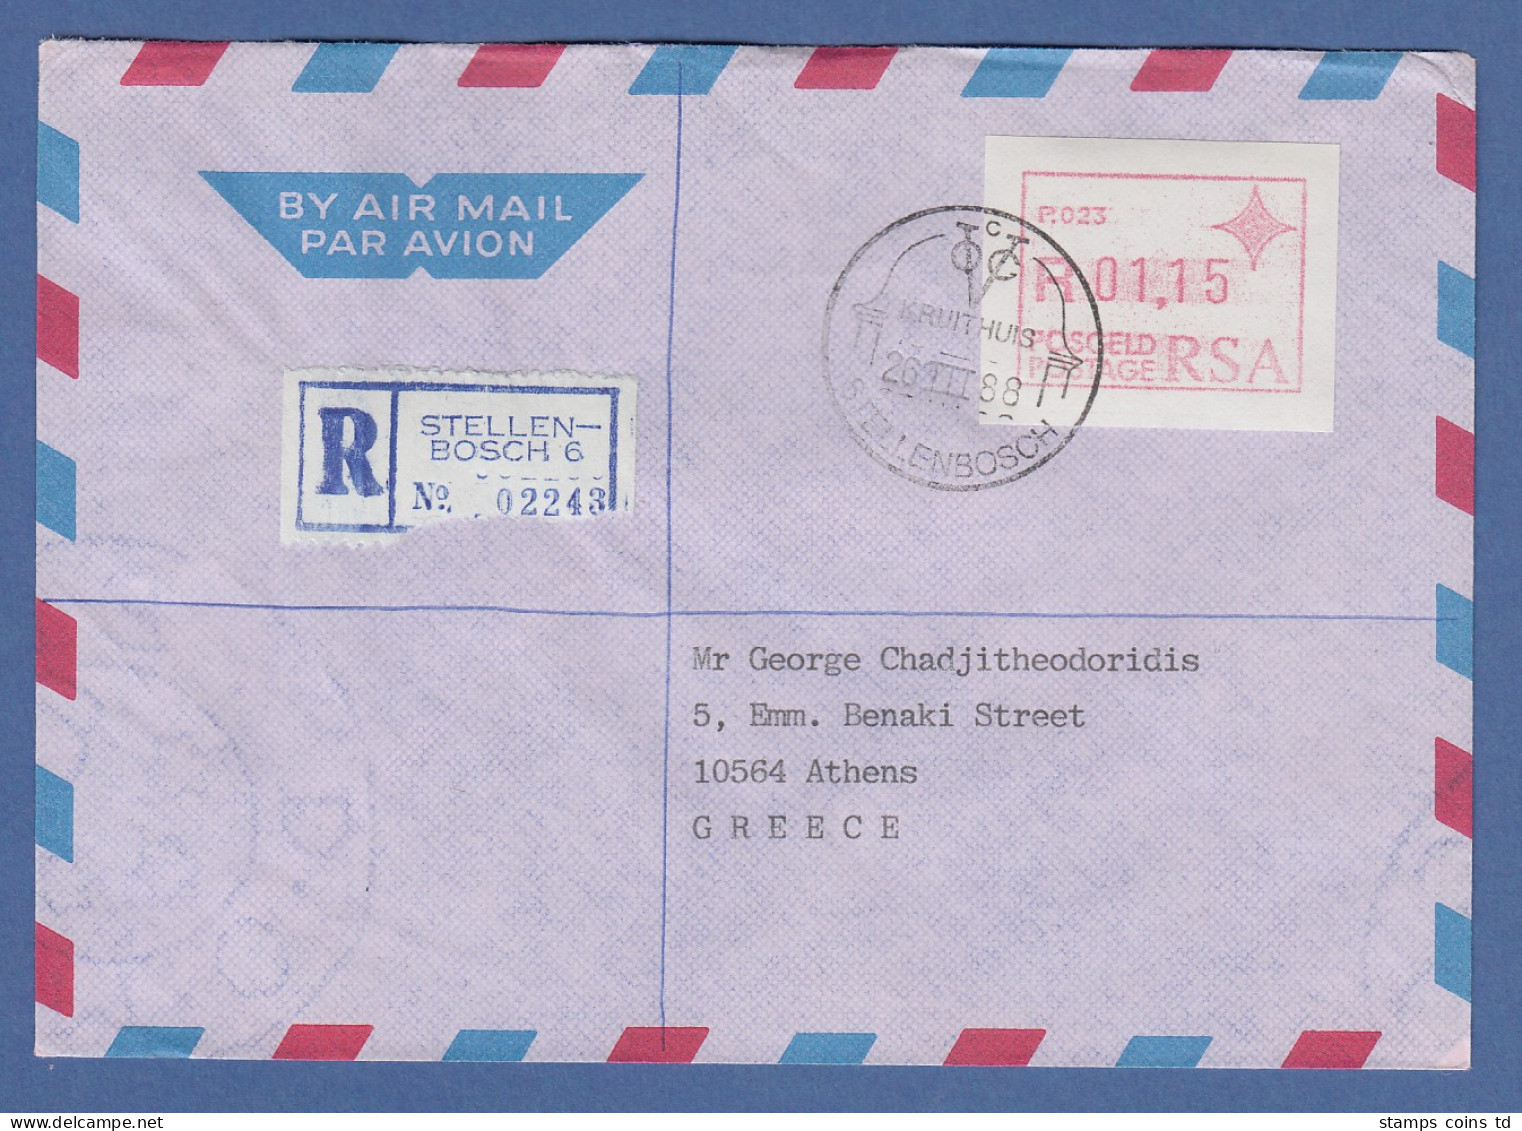 RSA Südafrika FRAMA-ATM Aus OA P.023 Stellenbosch 01,15 TP Auf Auslands-R-Brief - Frankeervignetten (Frama)